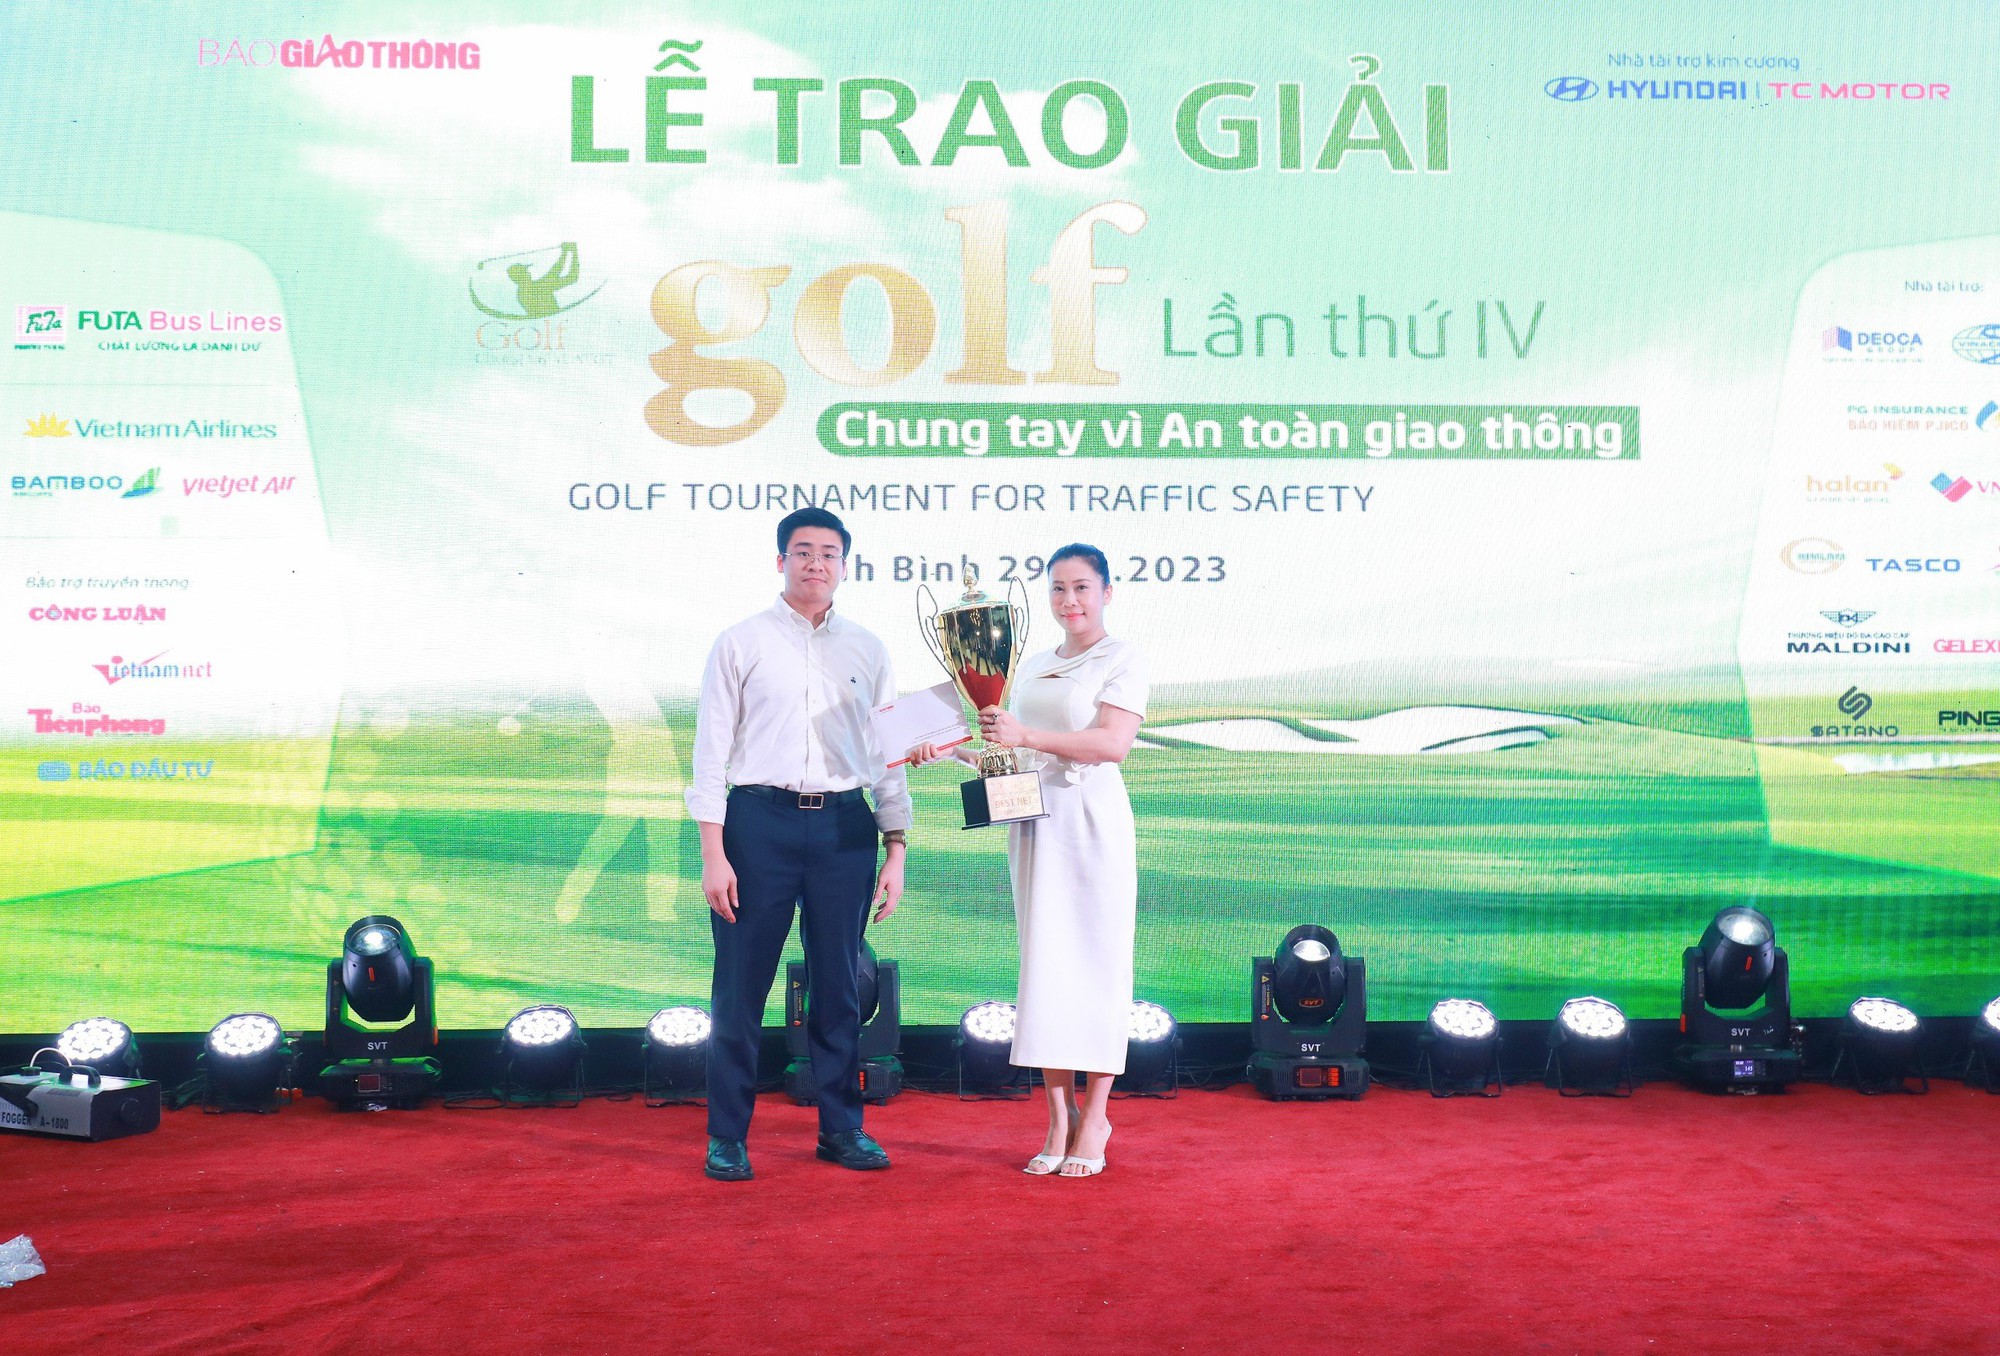 Golfer Nguyễn Hồng Hải vô địch Giải Golf chung tay vì ATGT 2023 - Ảnh 2.